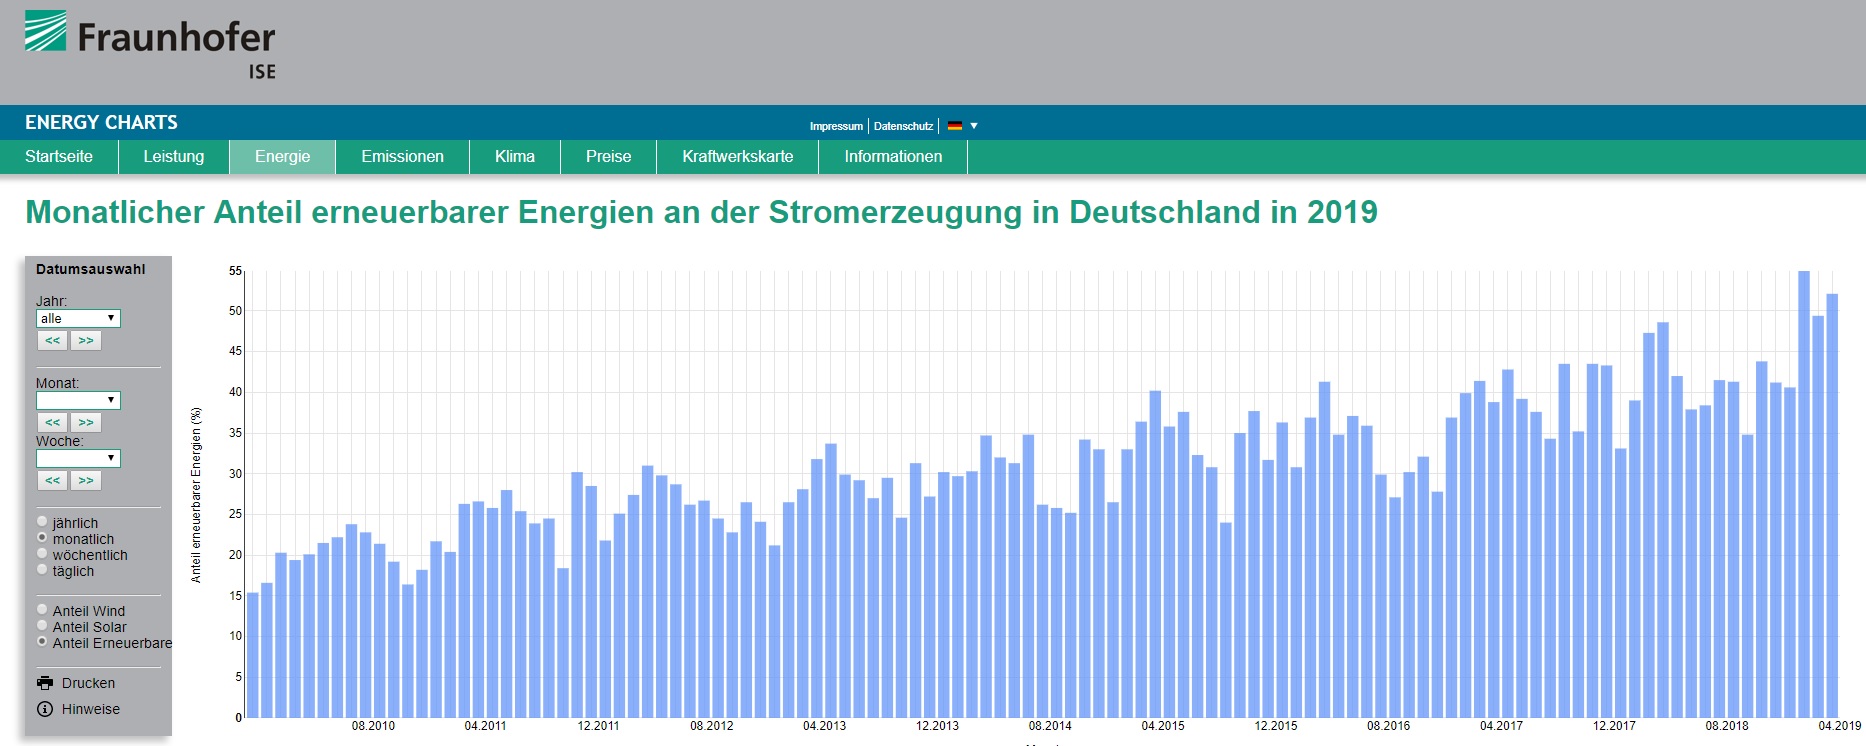 Deutschland Charts 2010